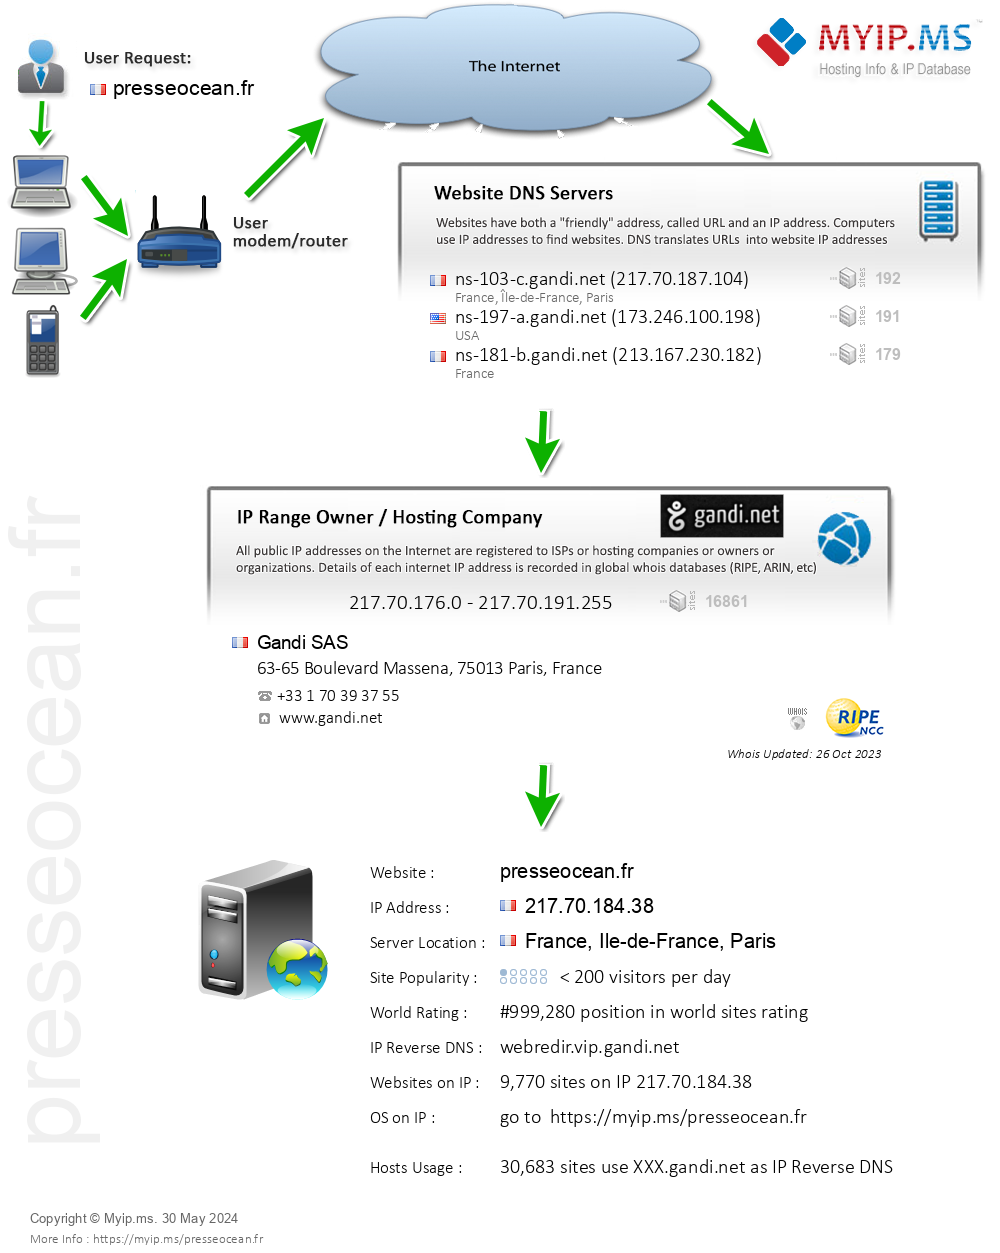 Presseocean.fr - Website Hosting Visual IP Diagram